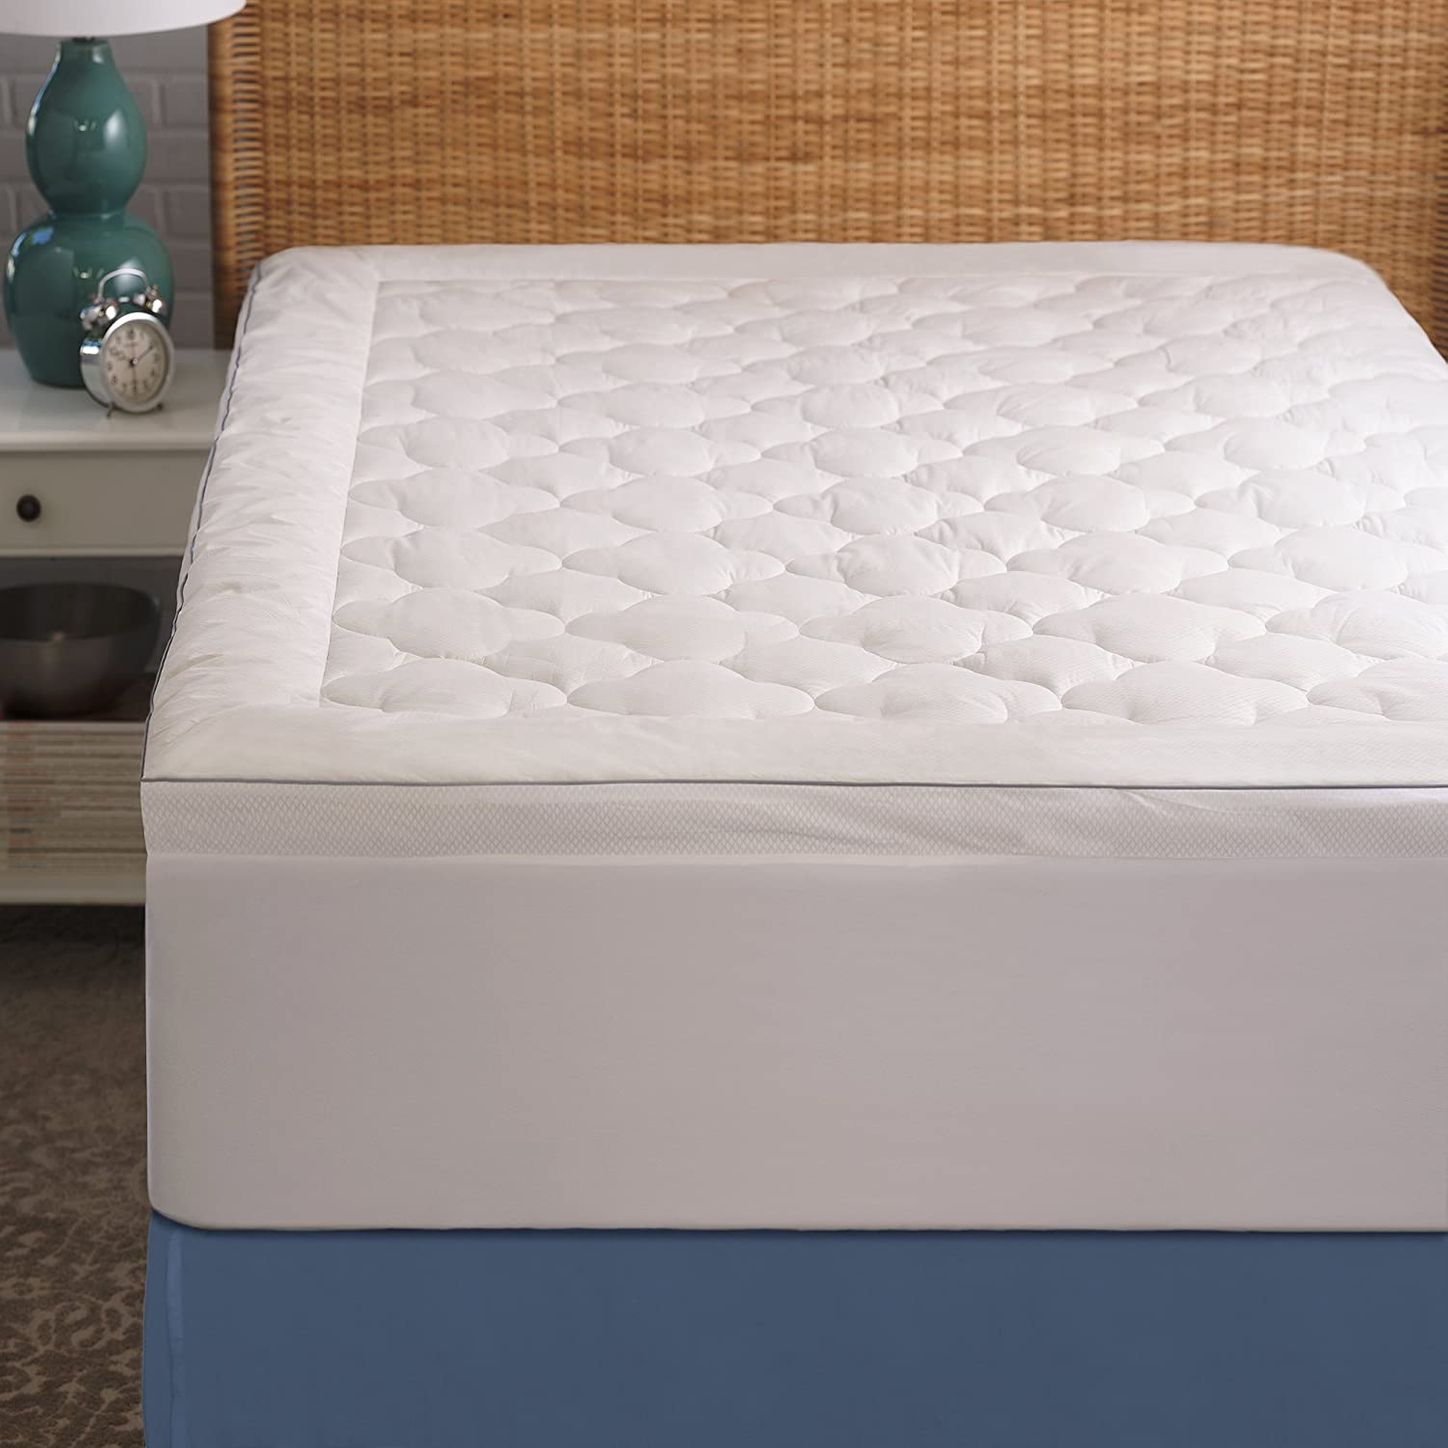 cooling hybrid gel foam queen mattress review